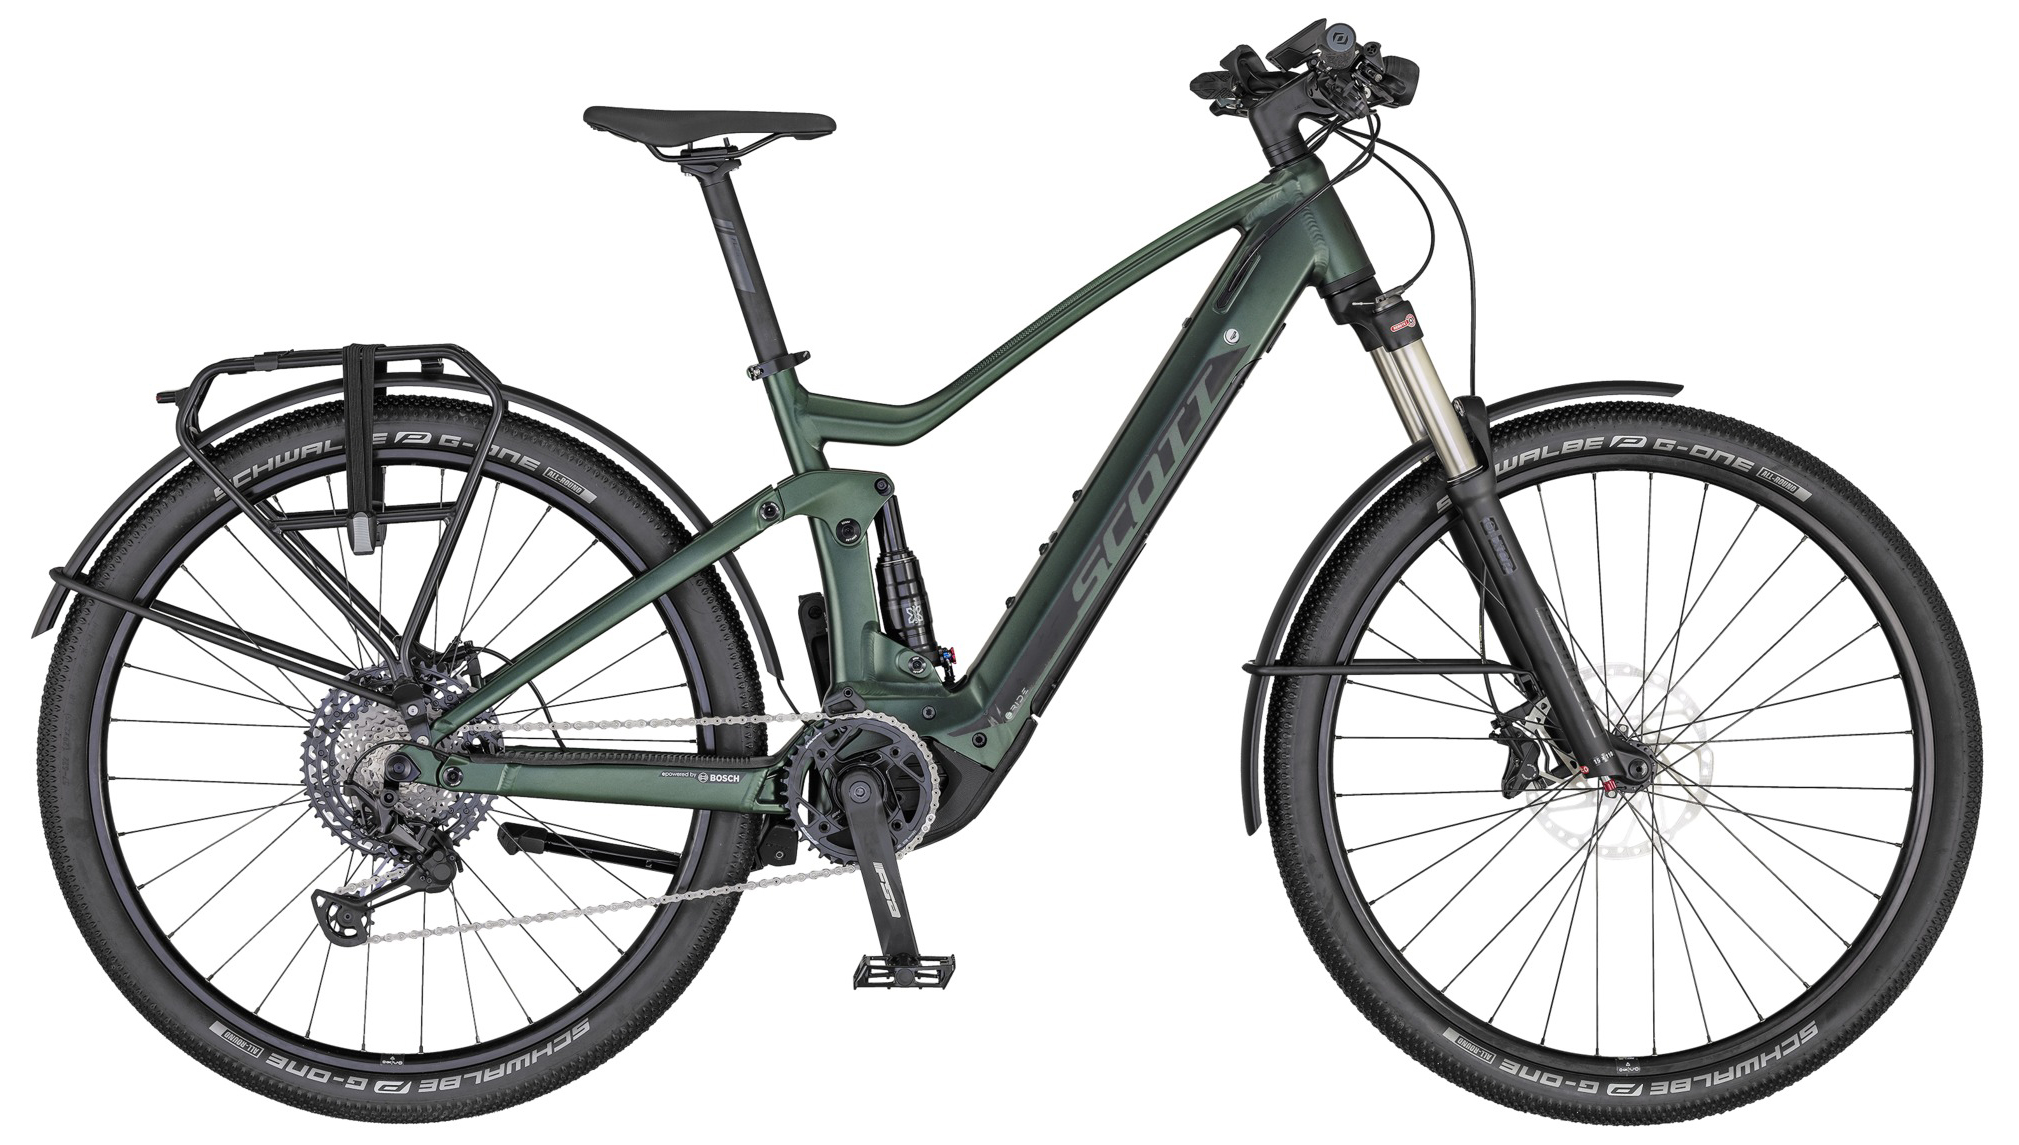  Отзывы о Электровелосипеде Scott Axis eRide Evo 2020